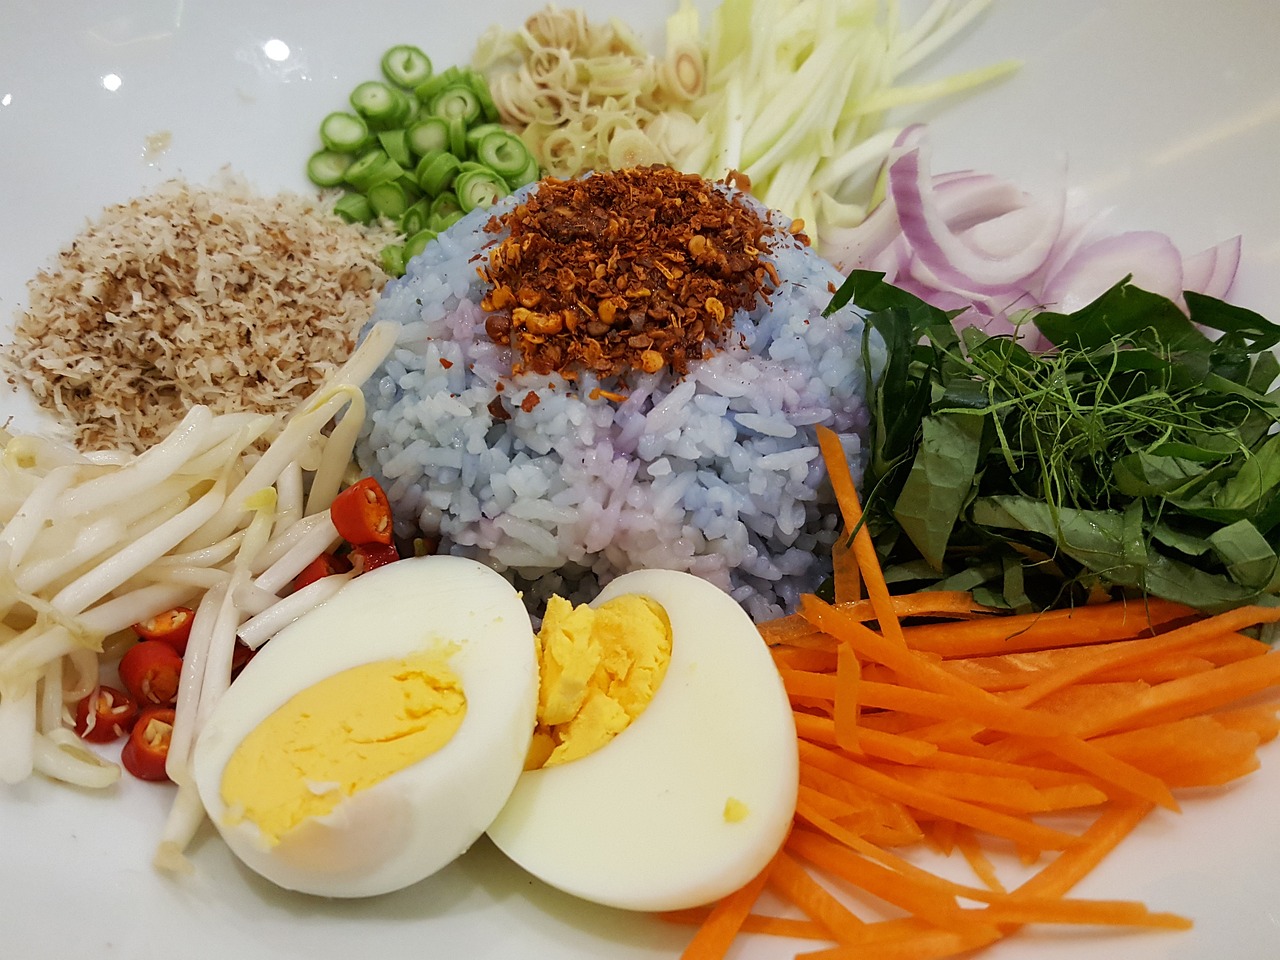 Insalata di riso integrale con verdure e tofu: la ricetta per un piatto unico light